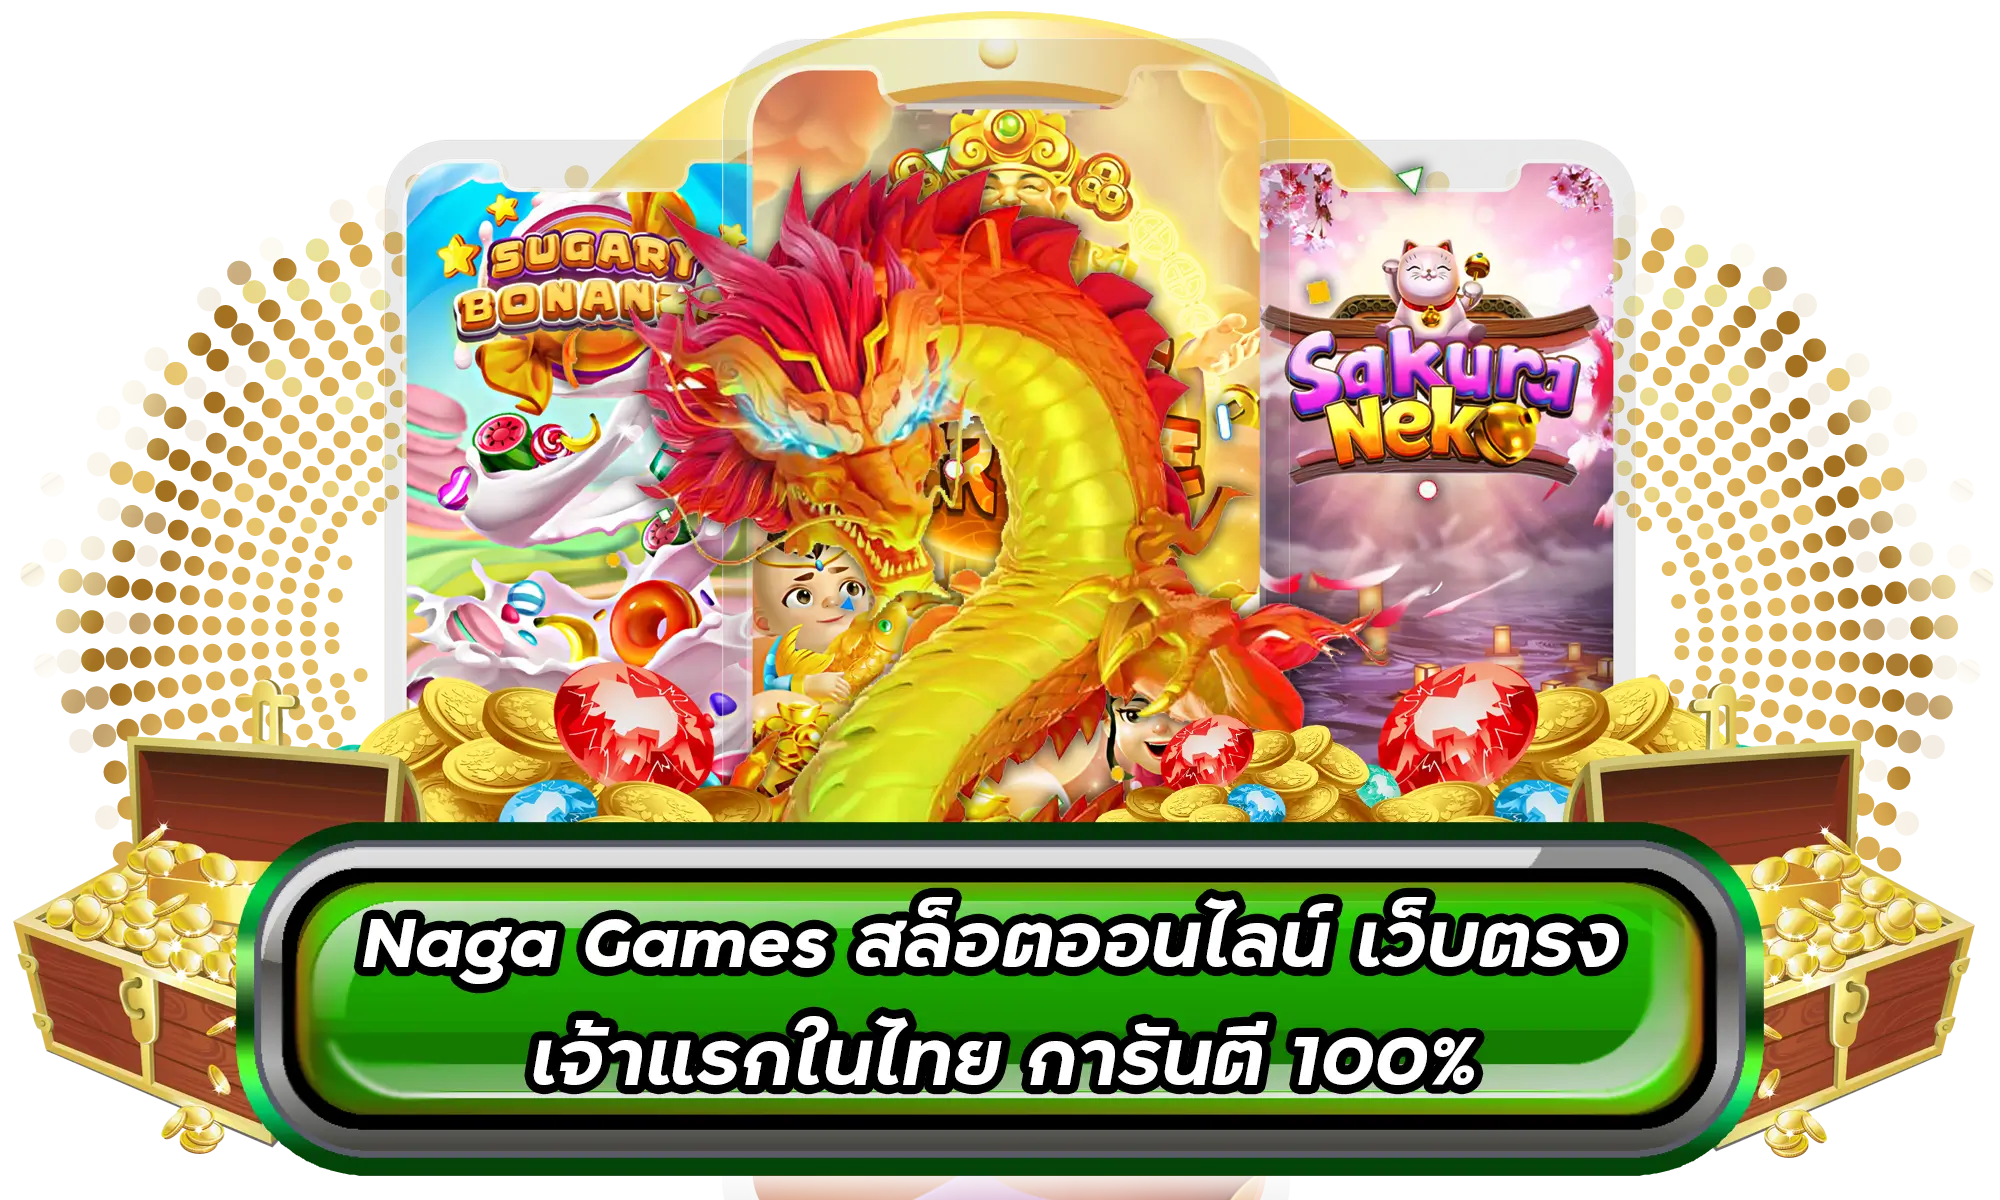 Naga Games สล็อตออนไลน์ เว็บตรง เจ้าแรกในไทย การันตี 100%